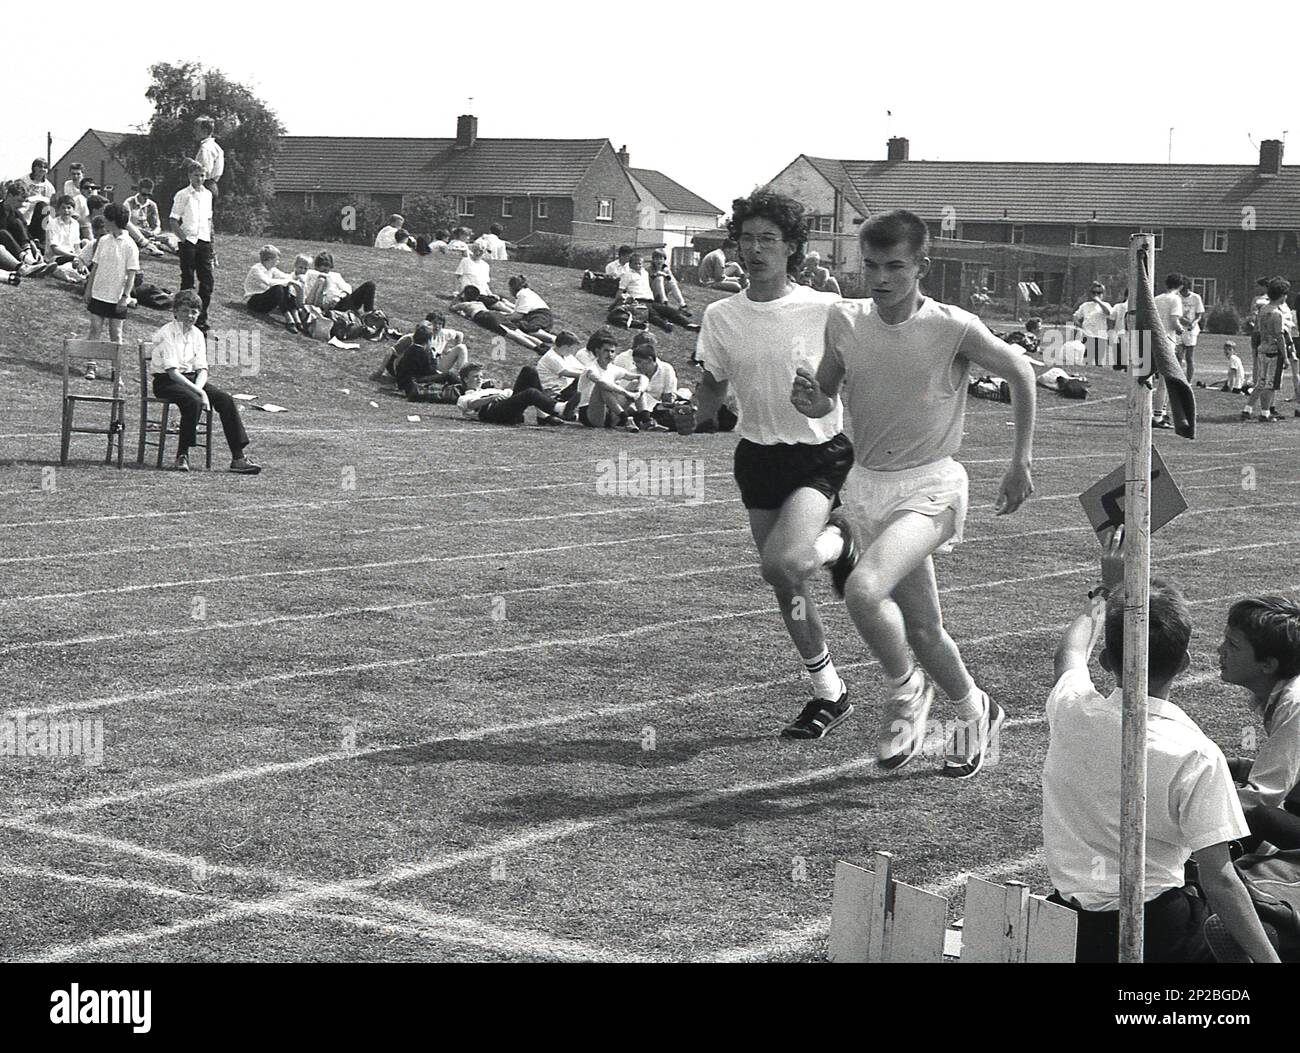 1989, una giornata di sport in una scuola secondaria, due ragazzi in gara in una corsa in erba di un campo sportivo, Sleaford, Lincs, Inghilterra, Regno Unito. Un scolaro seduto sull'erba tiene un numero di giro. Foto Stock